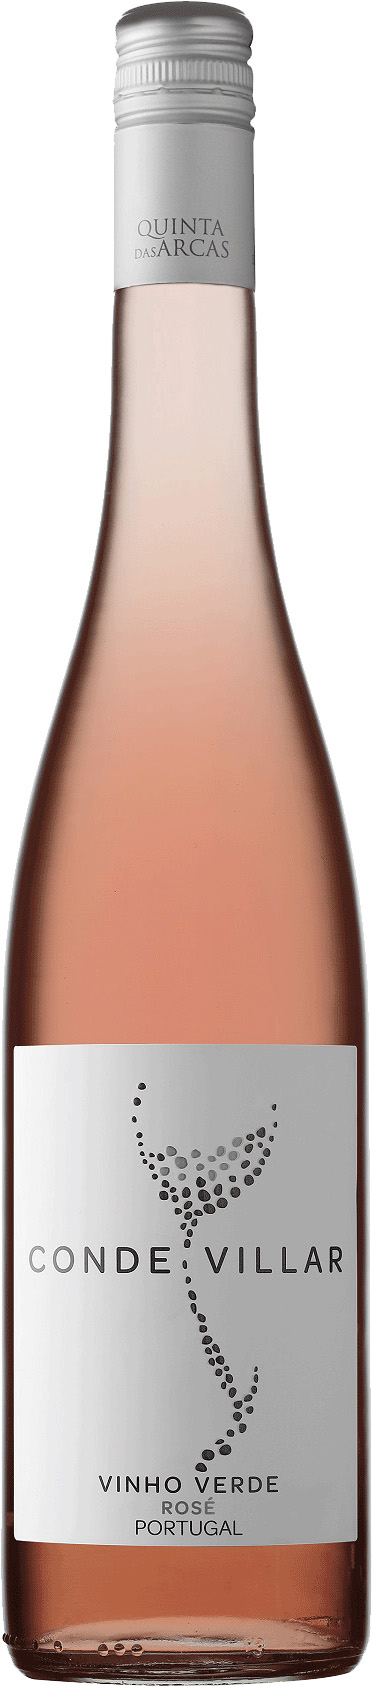 Quinta das Arcas - Conde Villar Vinho Verde - rosé | Solo-Vino | Die besten  Weine | Wein online bestellen